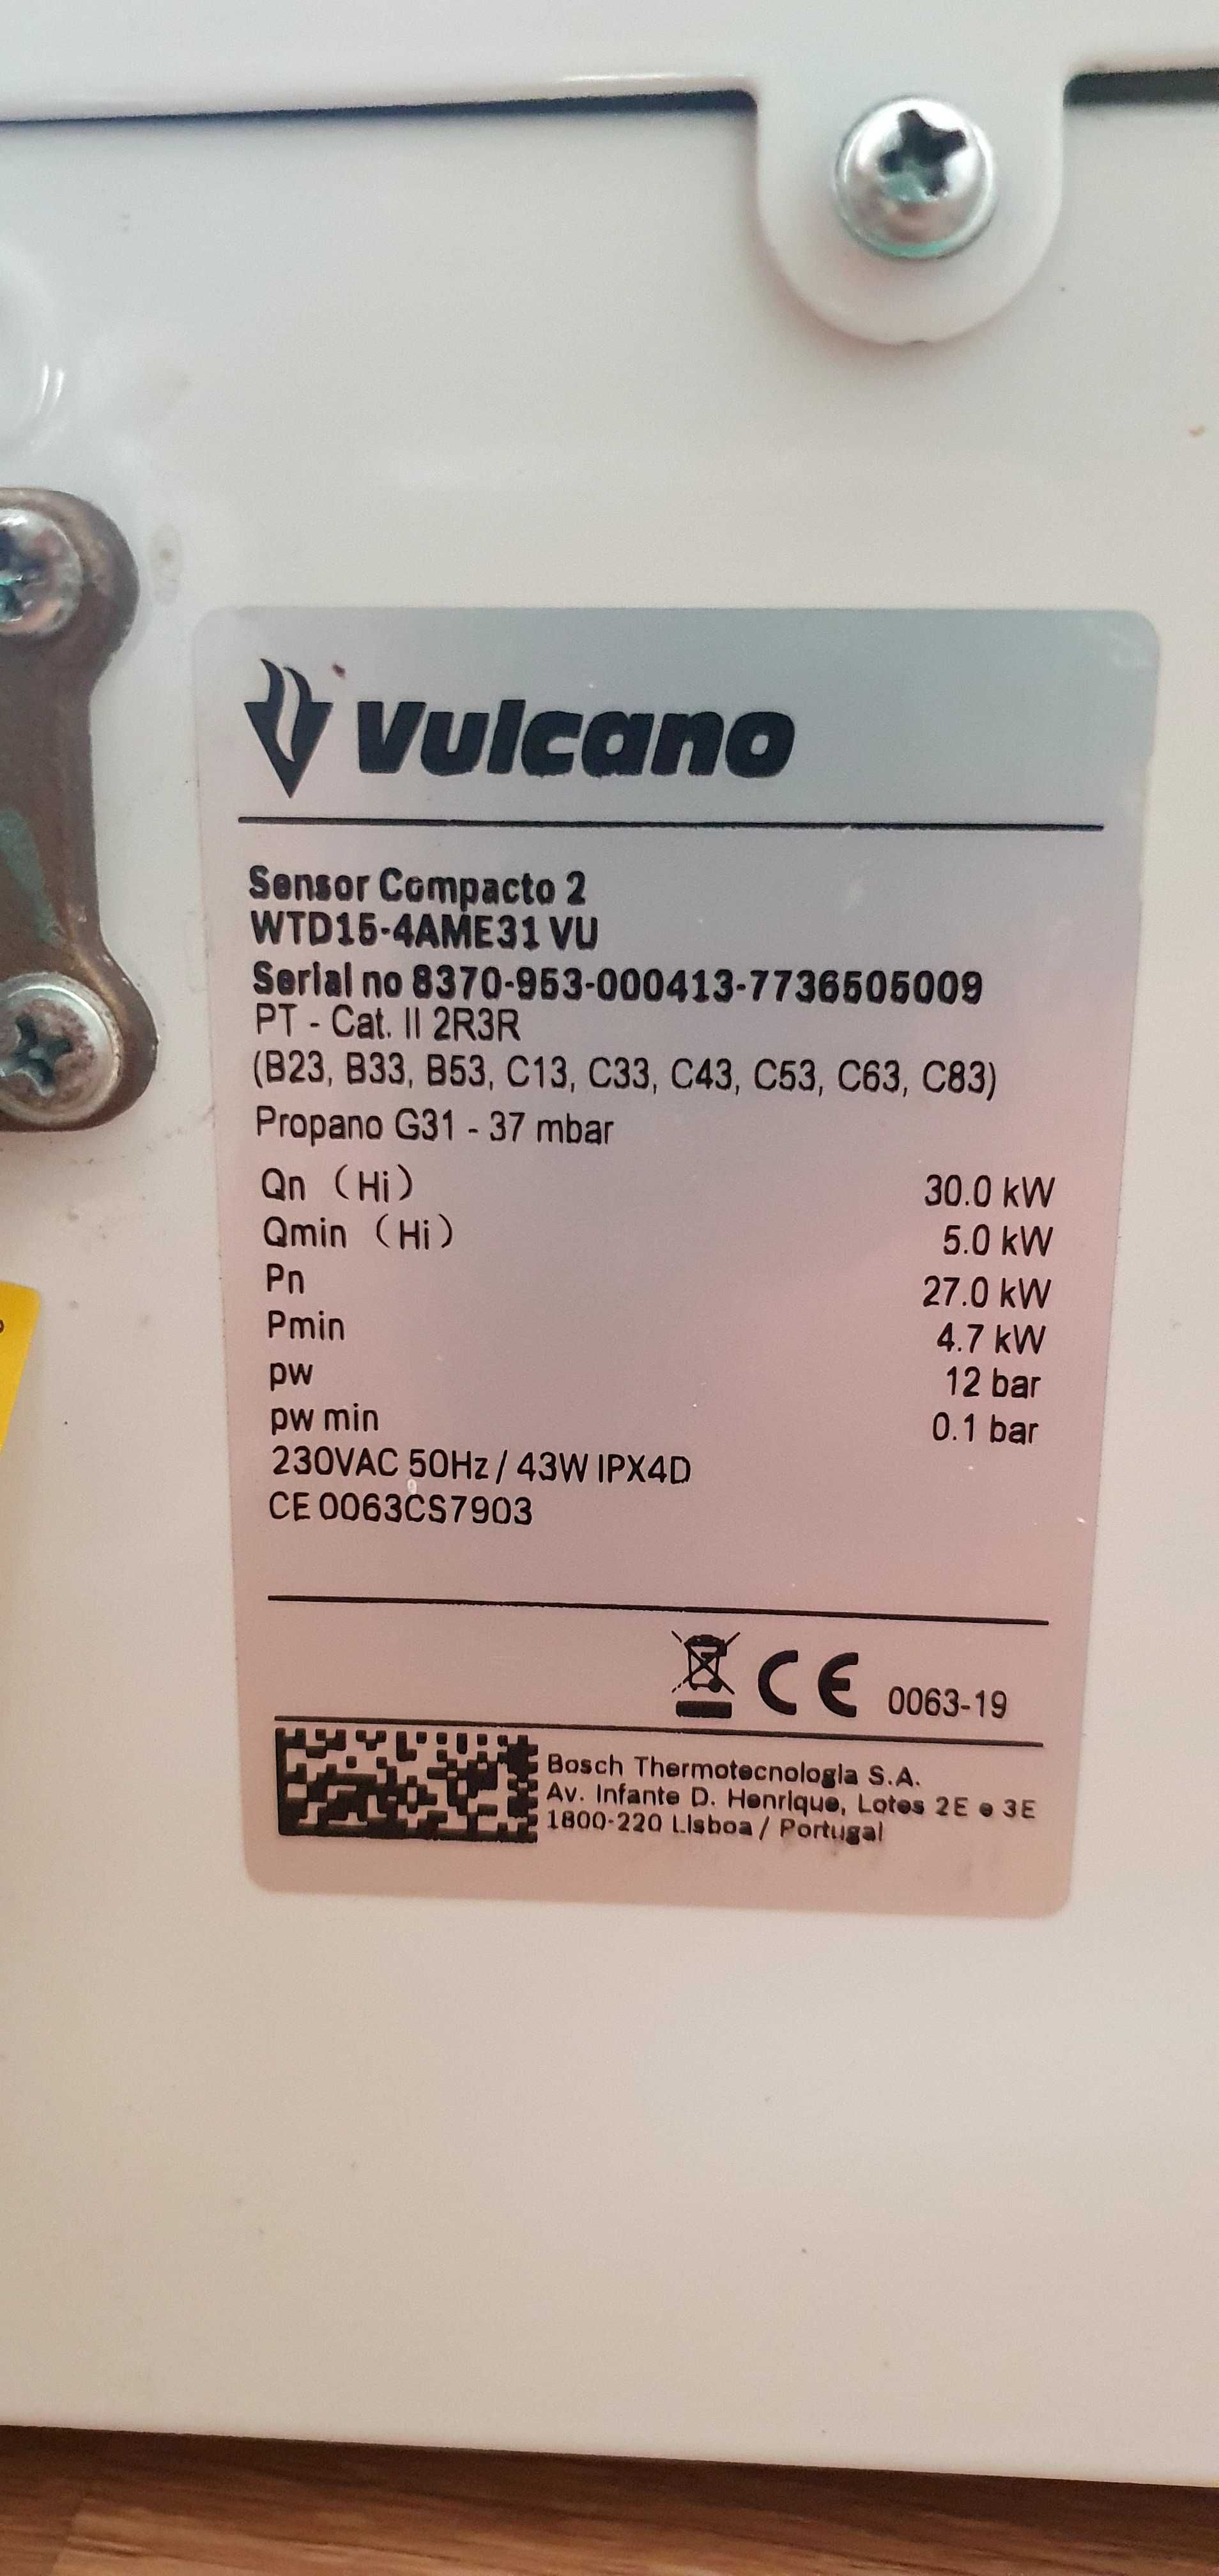 Esquentador Vulcano WTD15-4AME31 VU (15L) Gás Propano